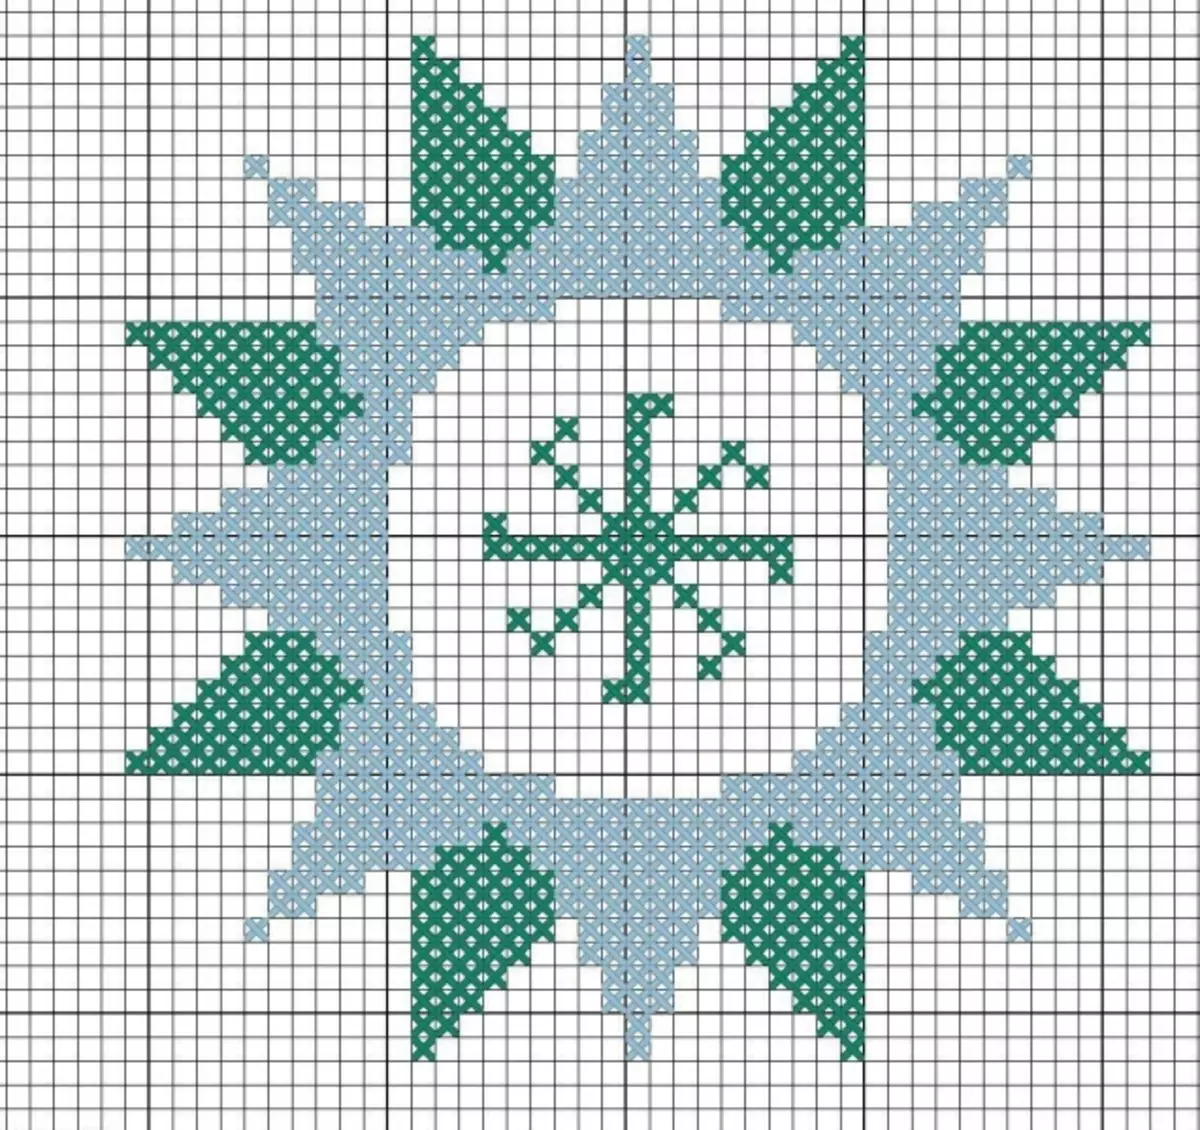 Gublication Embroidery Cross Scheme: للصلاة المنزلية، سبعة لجميع أفراد الأسرة، الاسم مجانا، تحميل للرجال